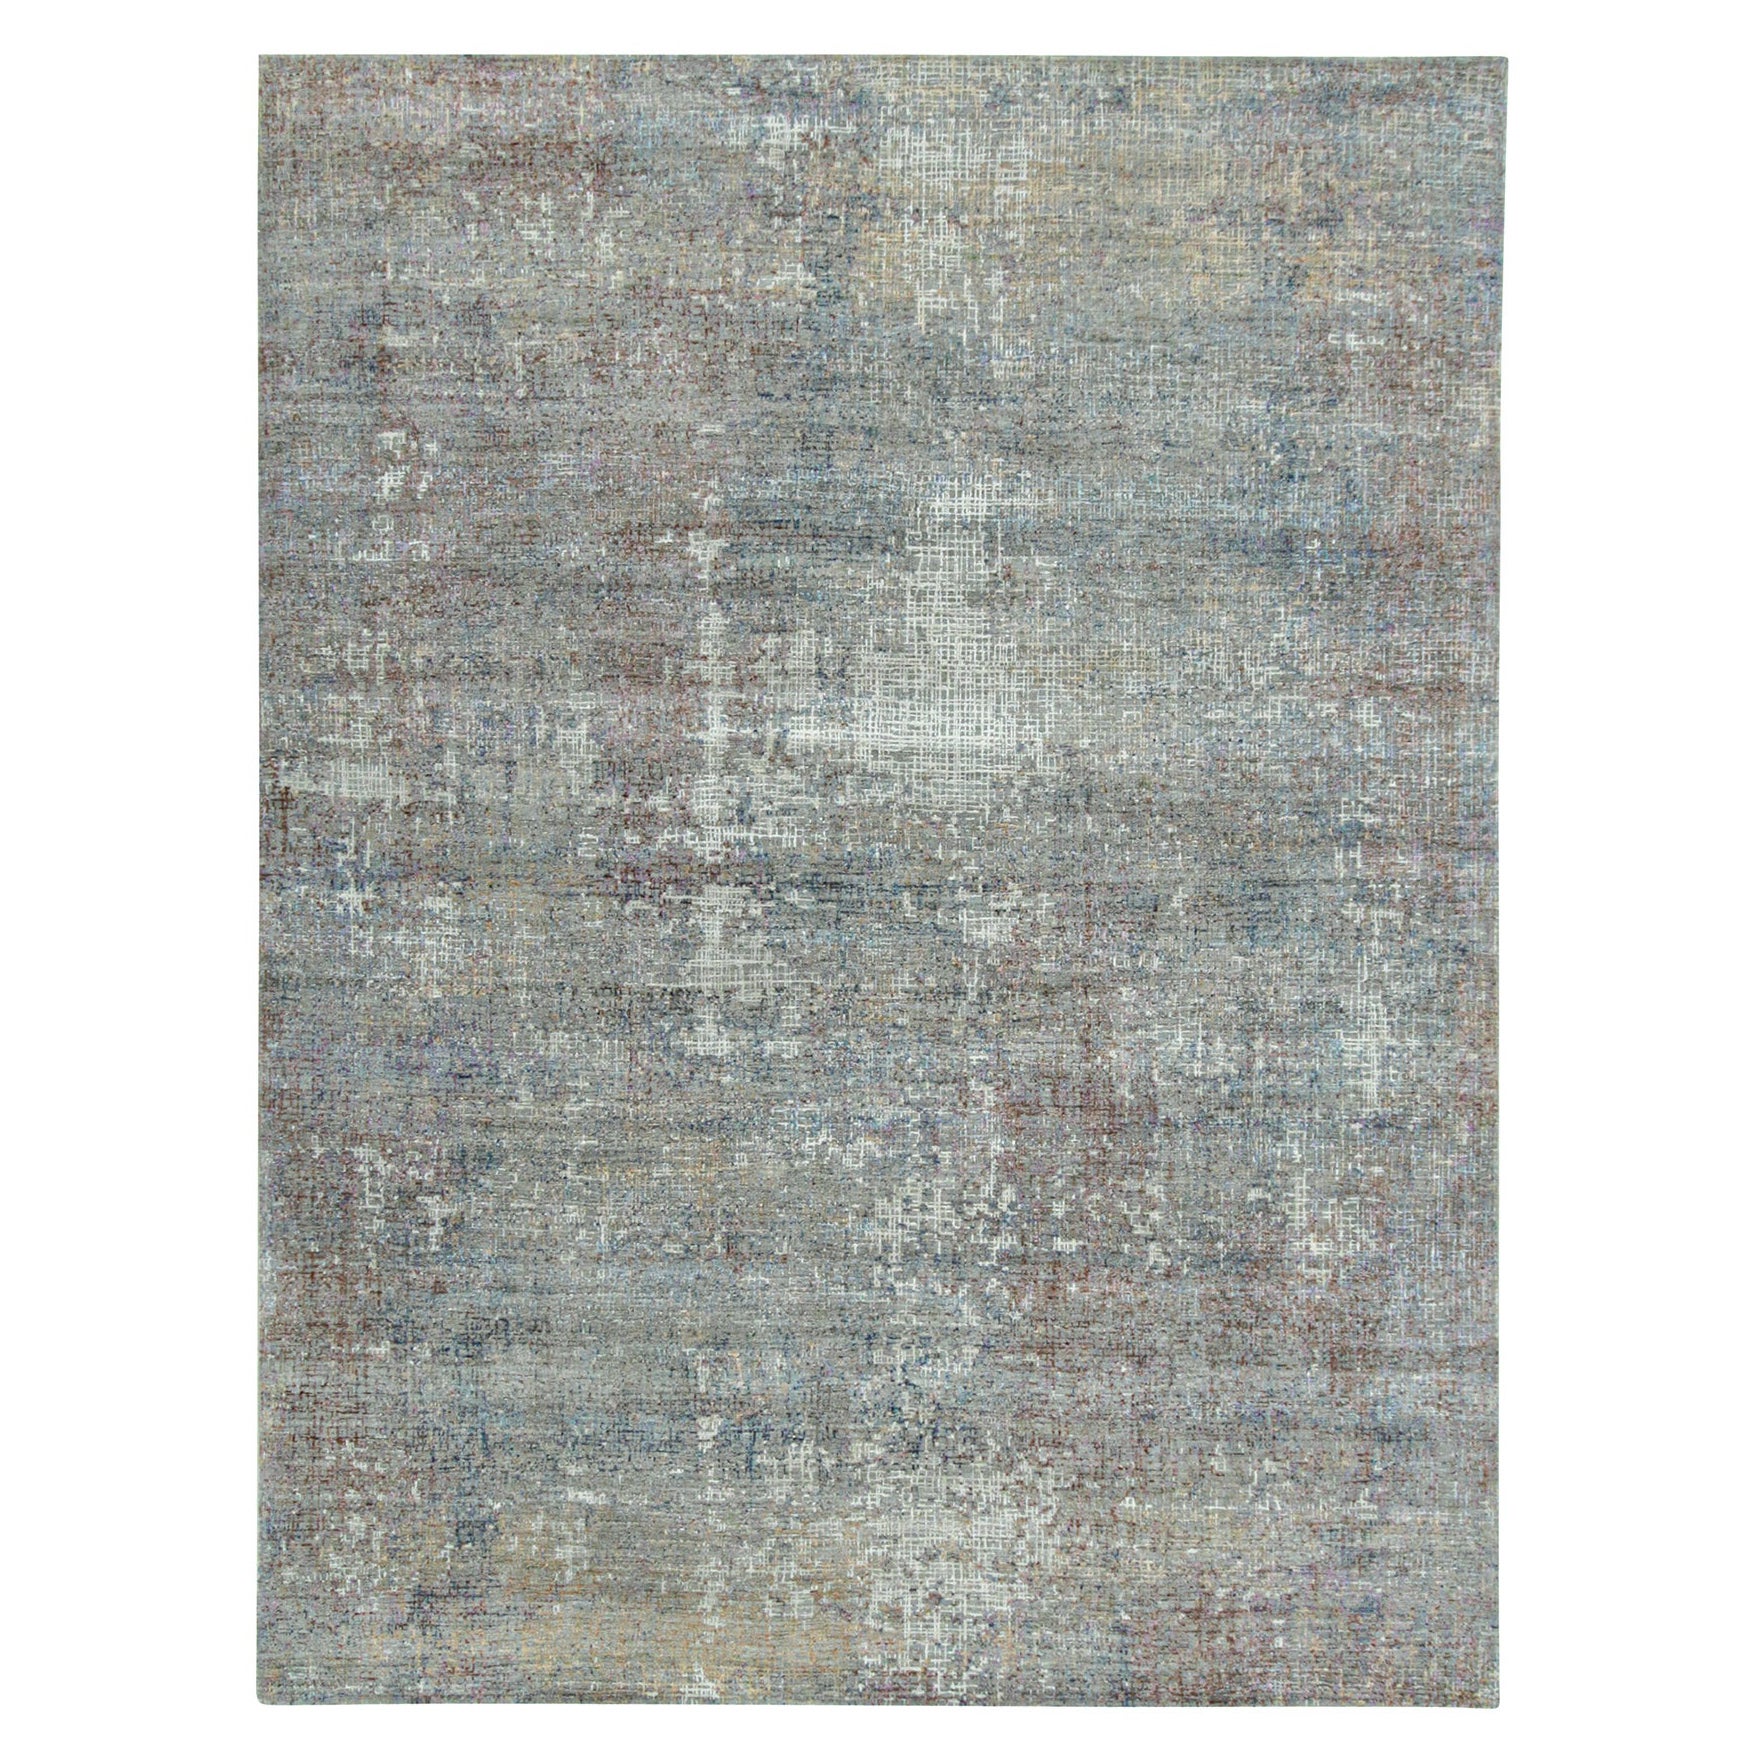 Rug & Kilim's Abstract Rug in Gray with Colorful Geometric Streaks (tapis abstrait gris avec des stries géométriques colorées)